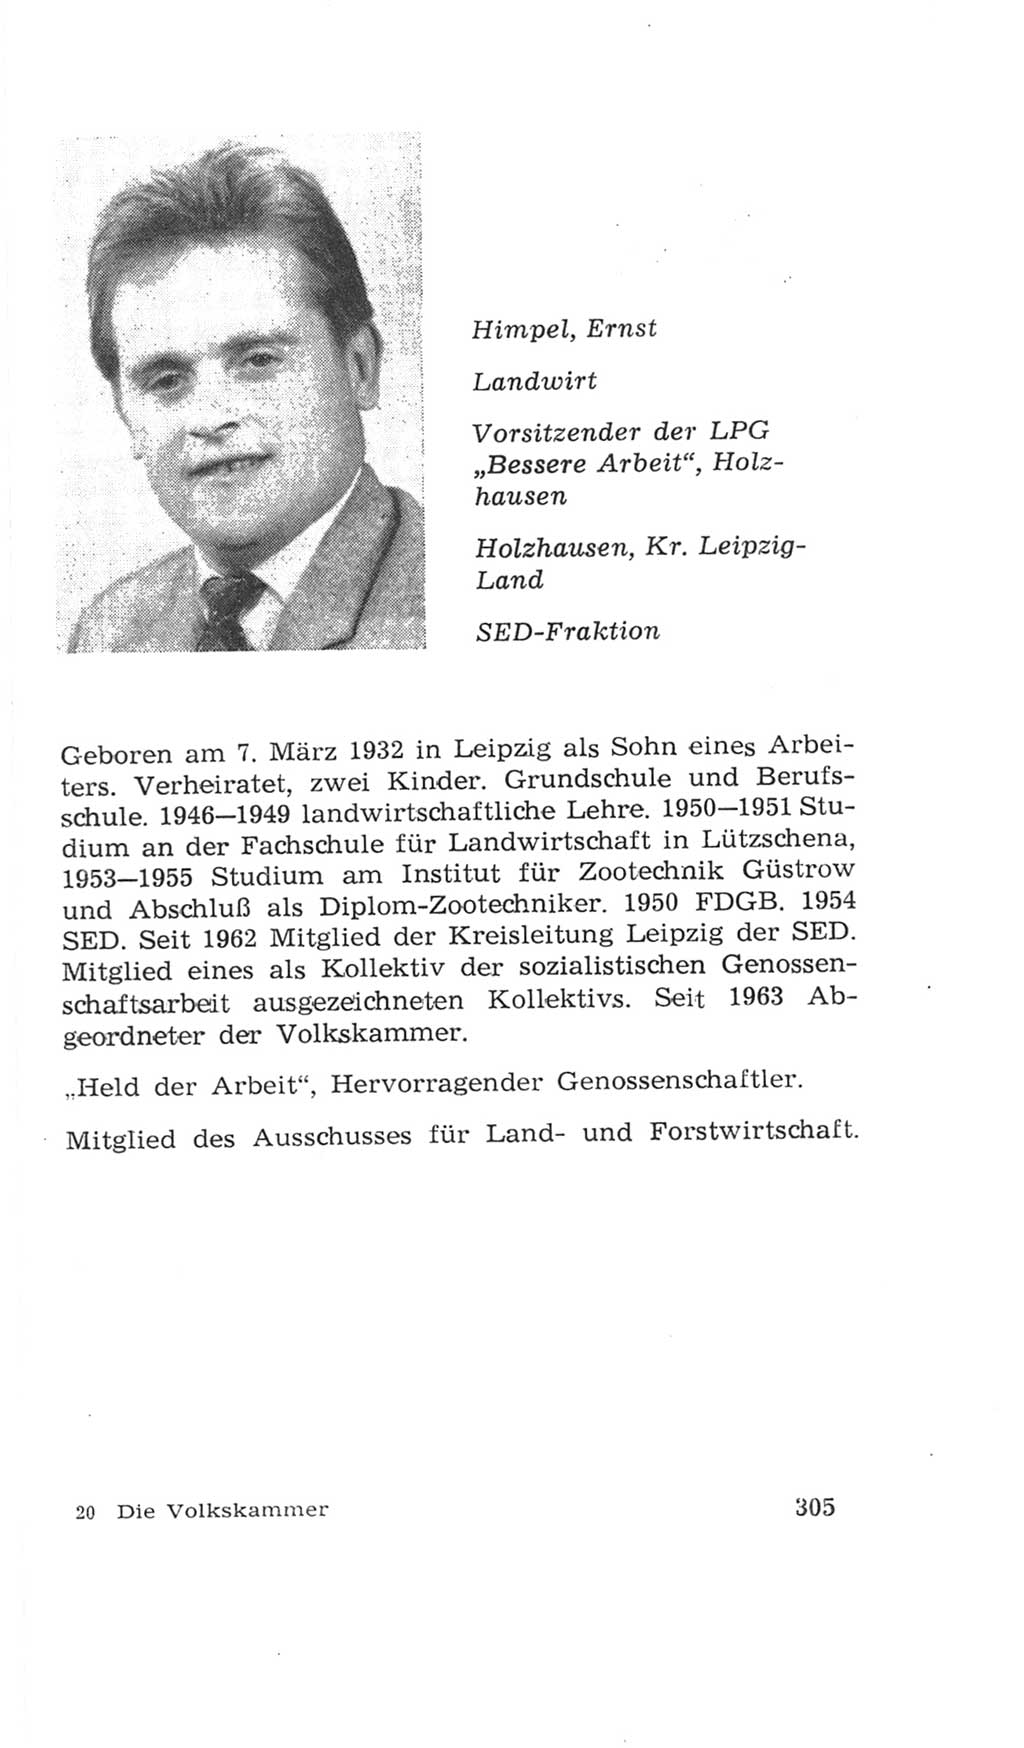 Volkskammer (VK) der Deutschen Demokratischen Republik (DDR), 4. Wahlperiode 1963-1967, Seite 305 (VK. DDR 4. WP. 1963-1967, S. 305)